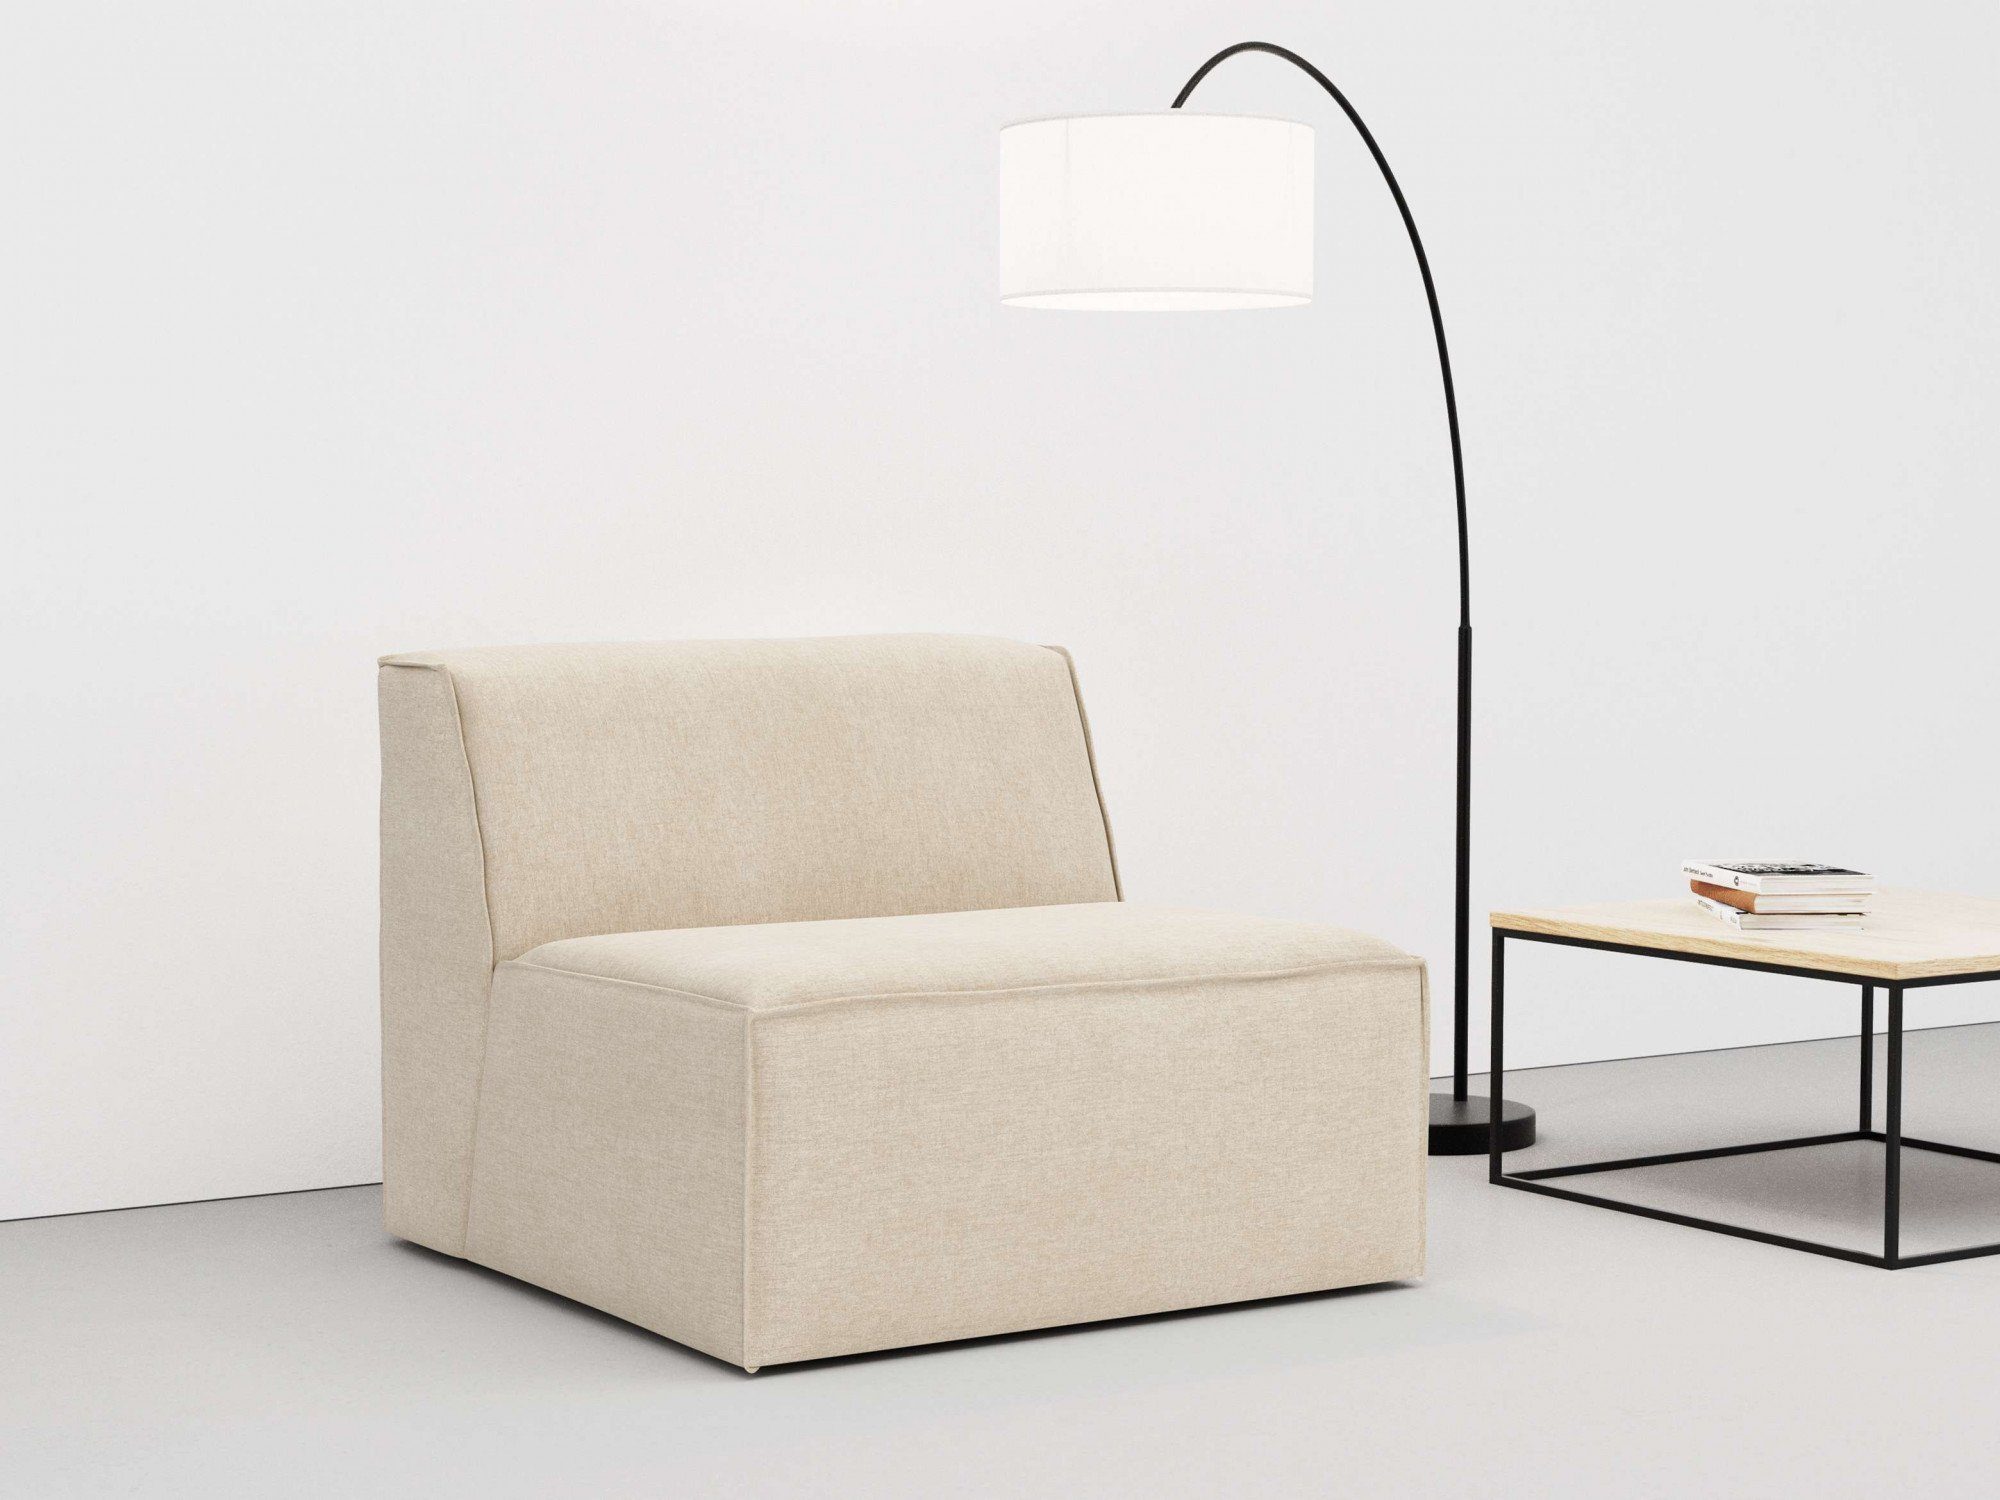 Sofa-Mittelelement große mit an Auswahl Modulen modular, RAUM.ID natural und Norvid, Komfortschaum, Polsterung